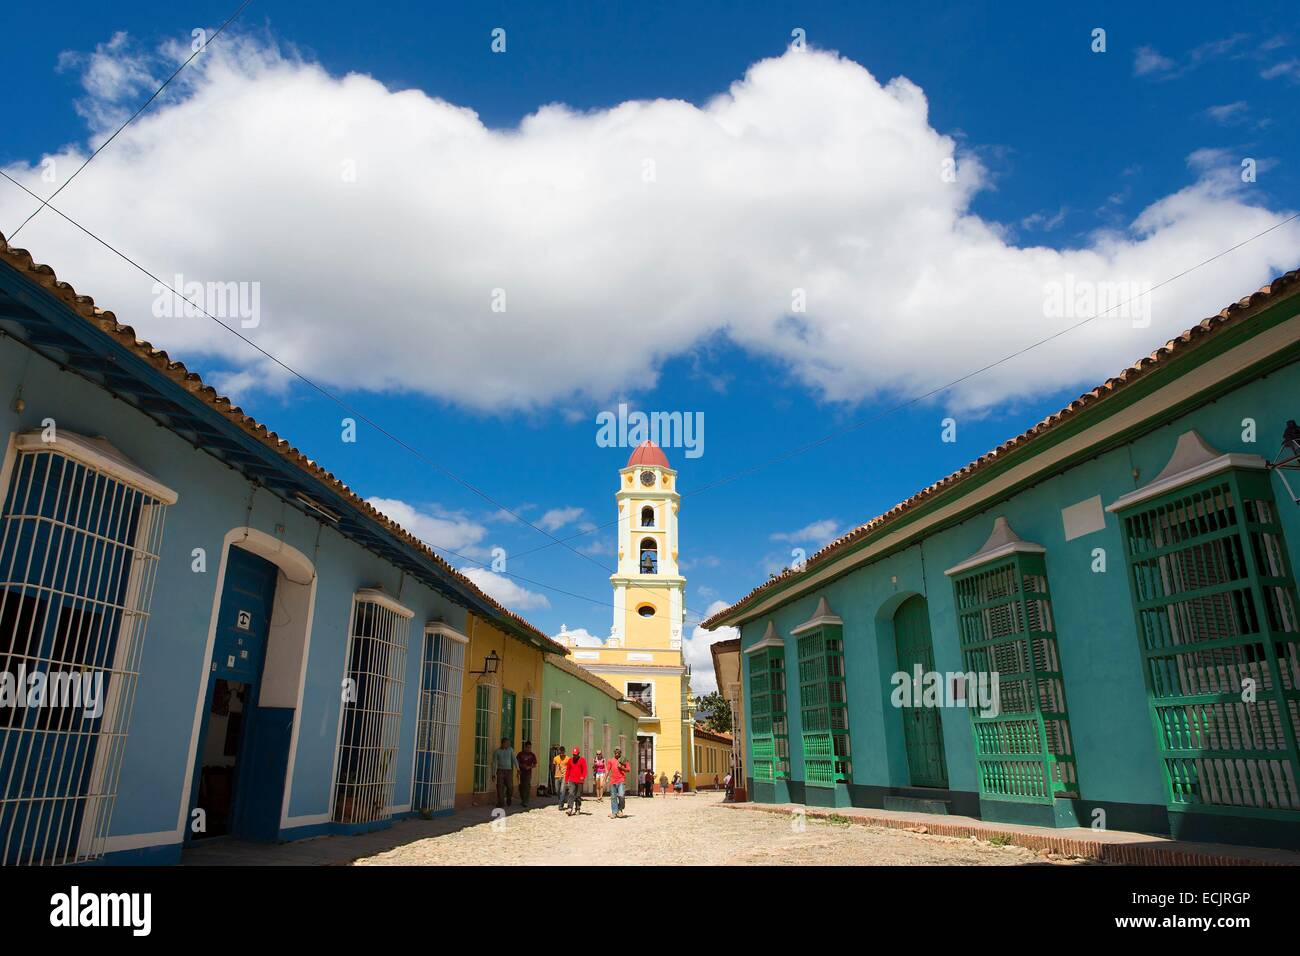 Cuba, Sancti Spiritus province, Trinidad de Cuba listed as World heritage by UNESCO, San Francisco de Assis church now the Museo Nacional de la lucha contra Bandidos Stock Photo